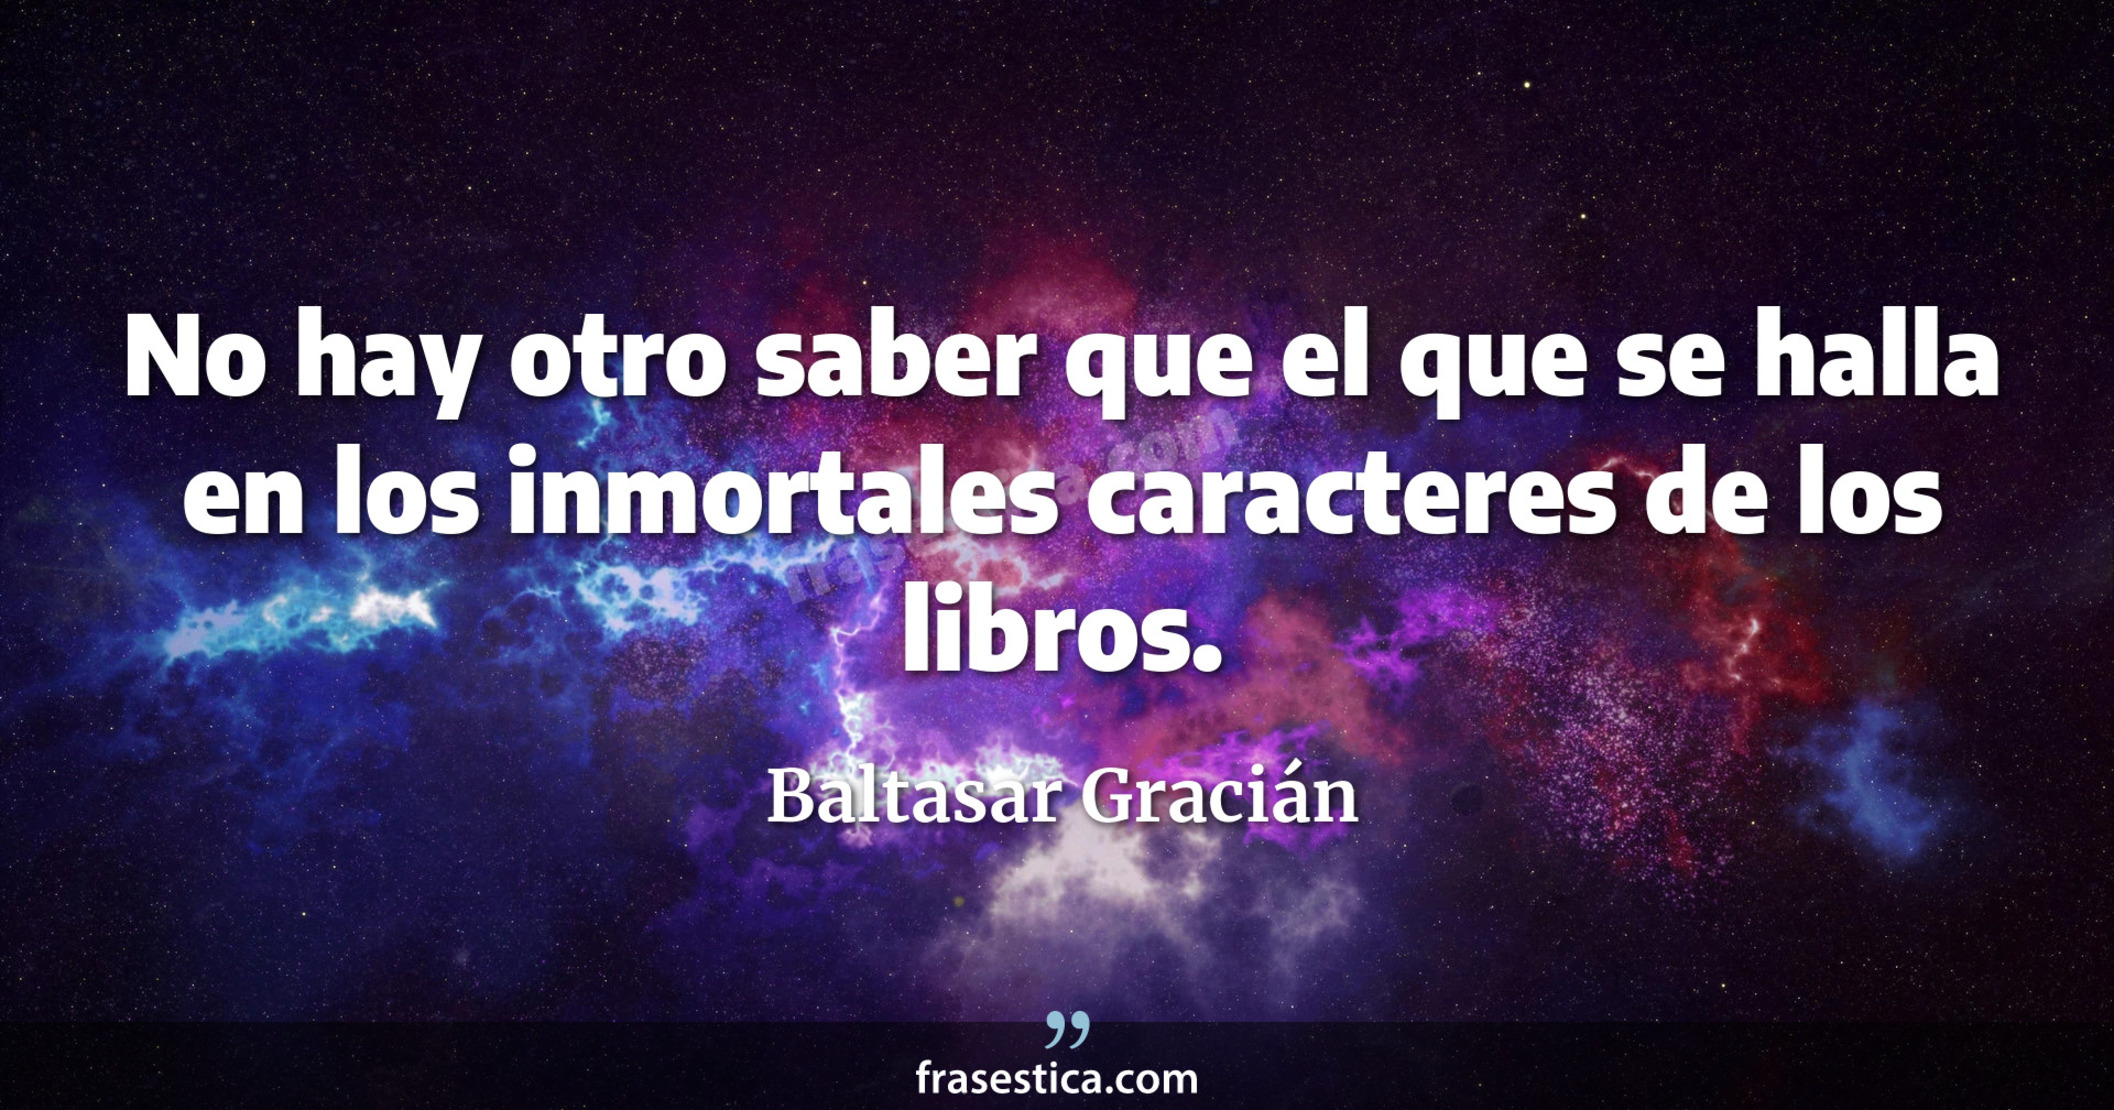 No hay otro saber que el que se halla en los inmortales caracteres de los libros. - Baltasar Gracián